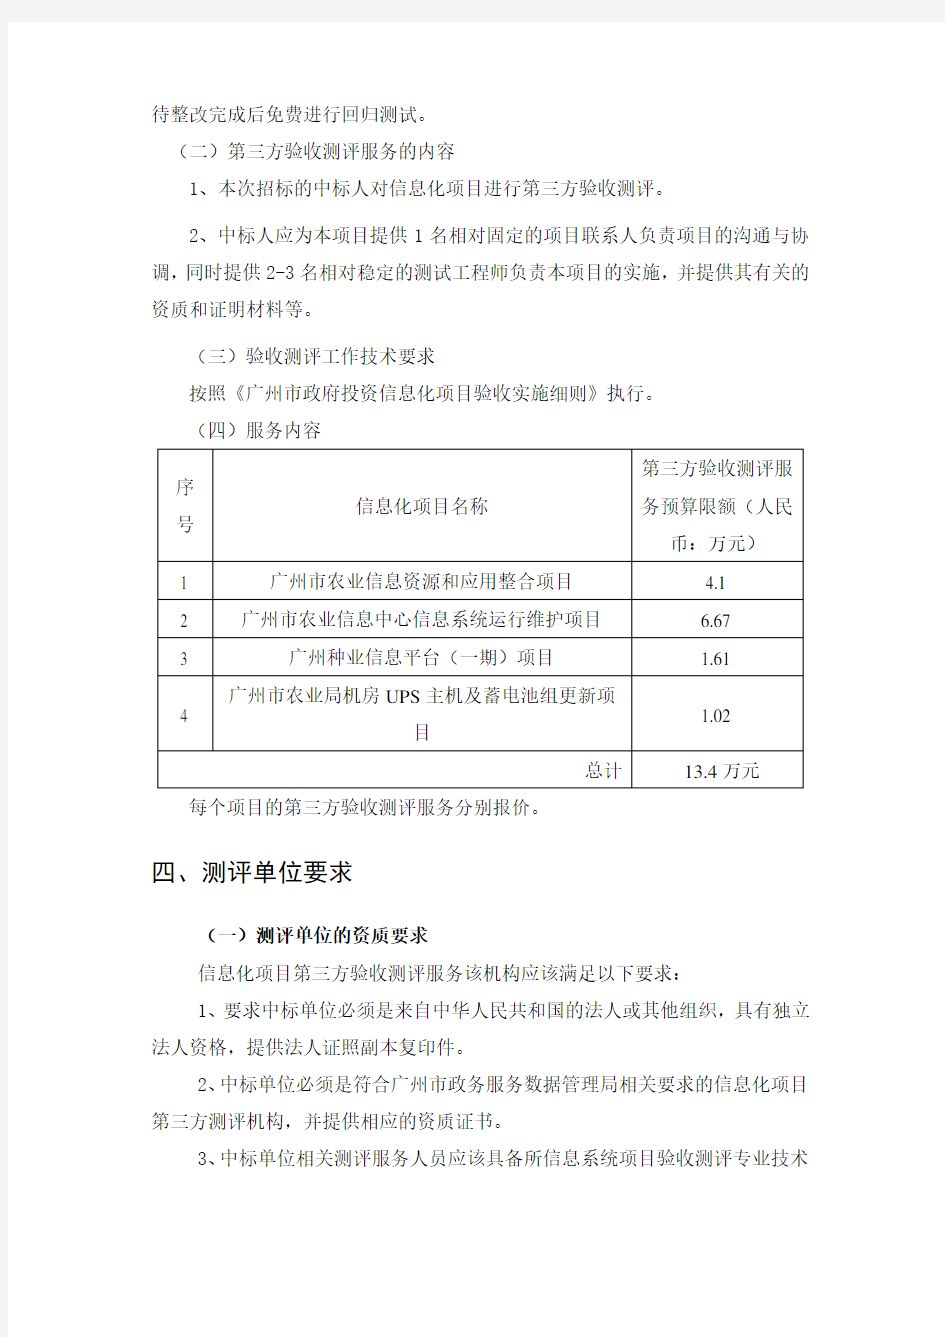 广州市农业信息中心信息化项目2019年第三方验收测评服务需